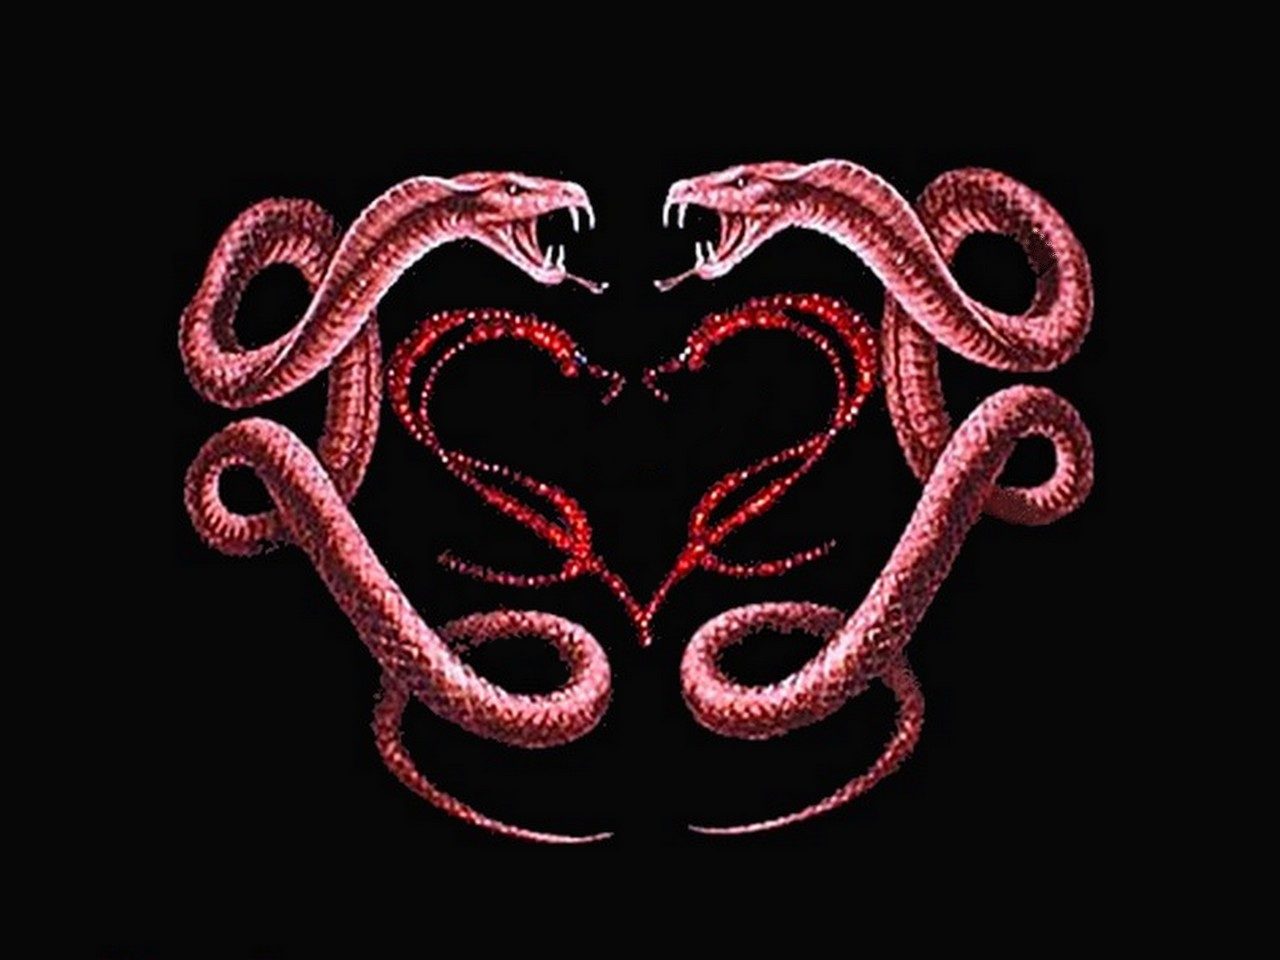 The Best Serpents Wallpaper - High Resolution King Cobra , HD Wallpaper & Backgrounds